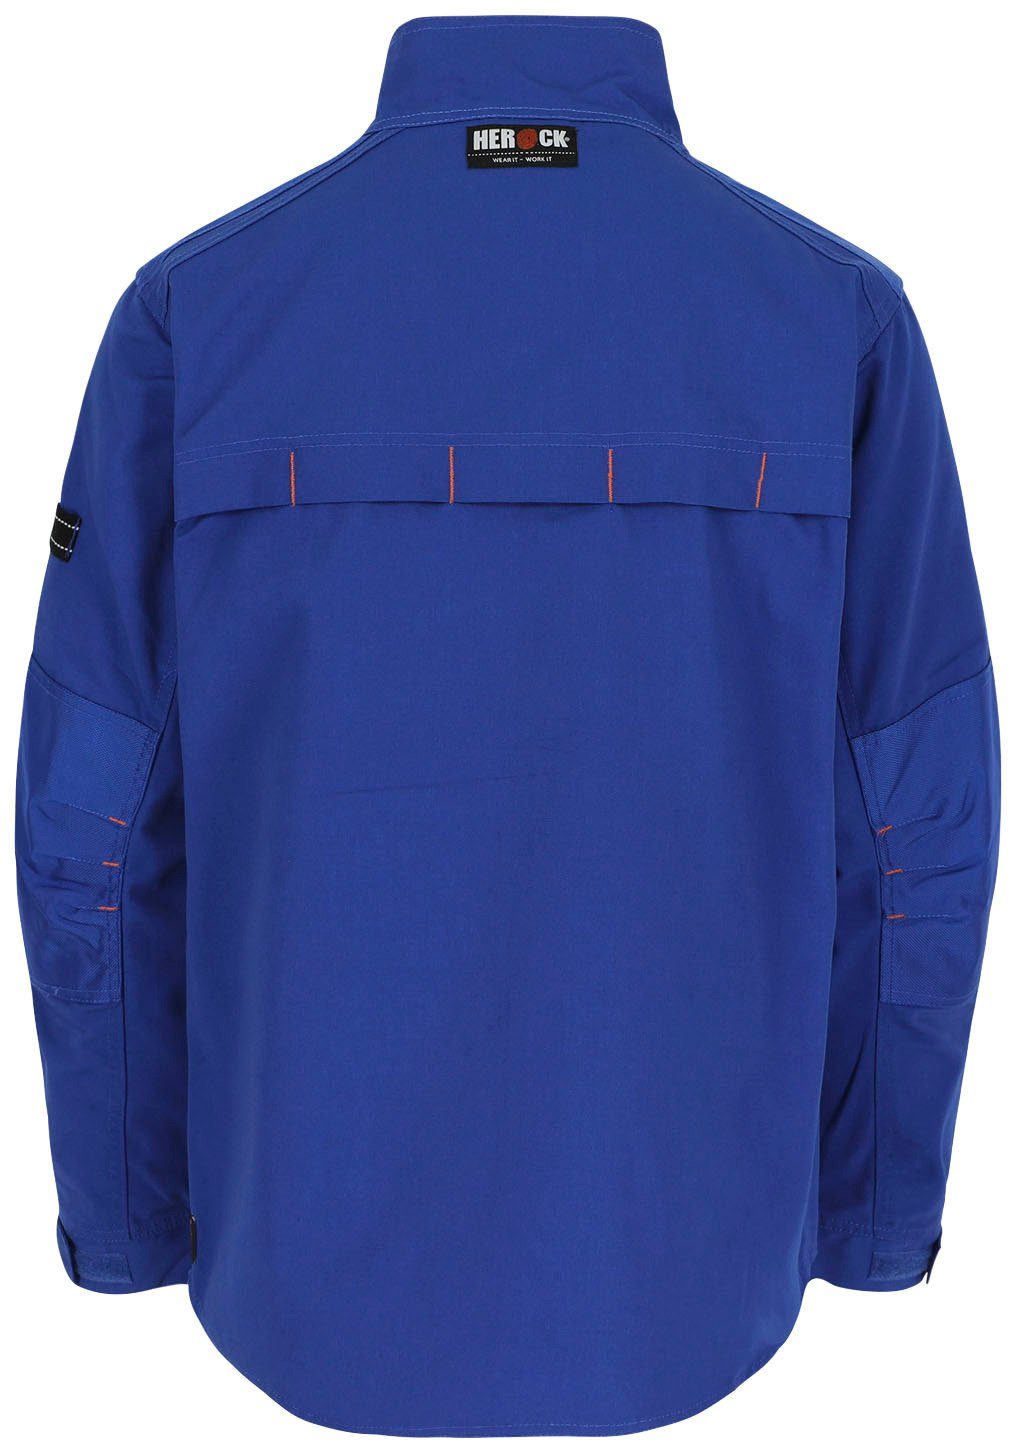 Wasserabweisend - Arbeitsjacke Bündchen robust Taschen Jacke Herock Anzar - - 7 verstellbare blau